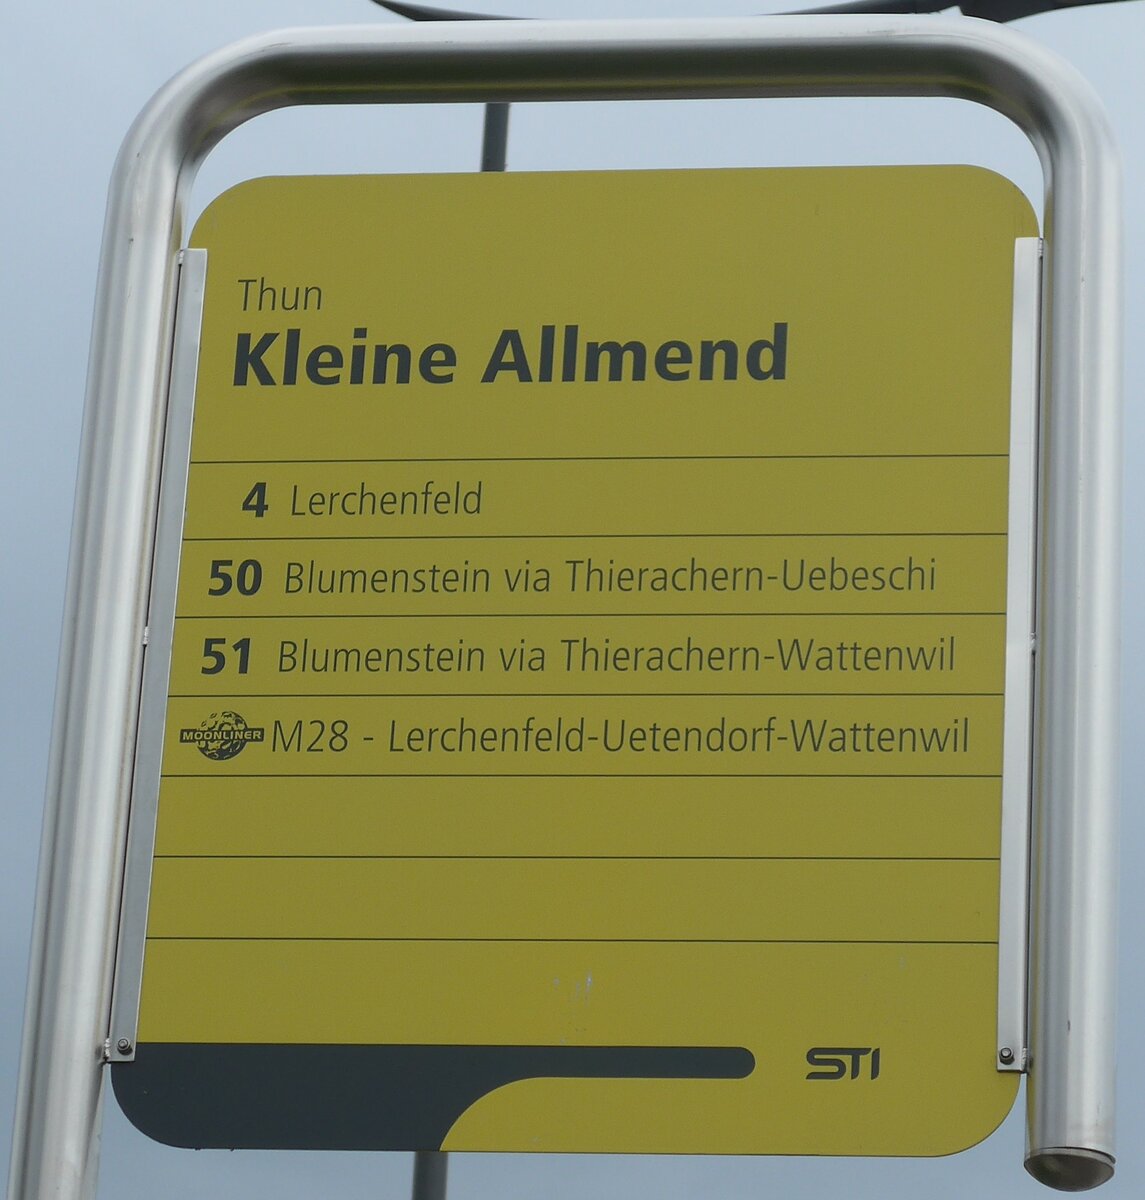 (196'473) - STI-Haltestellenschild - Thun, Kleine Allmend - am 2. September 2018